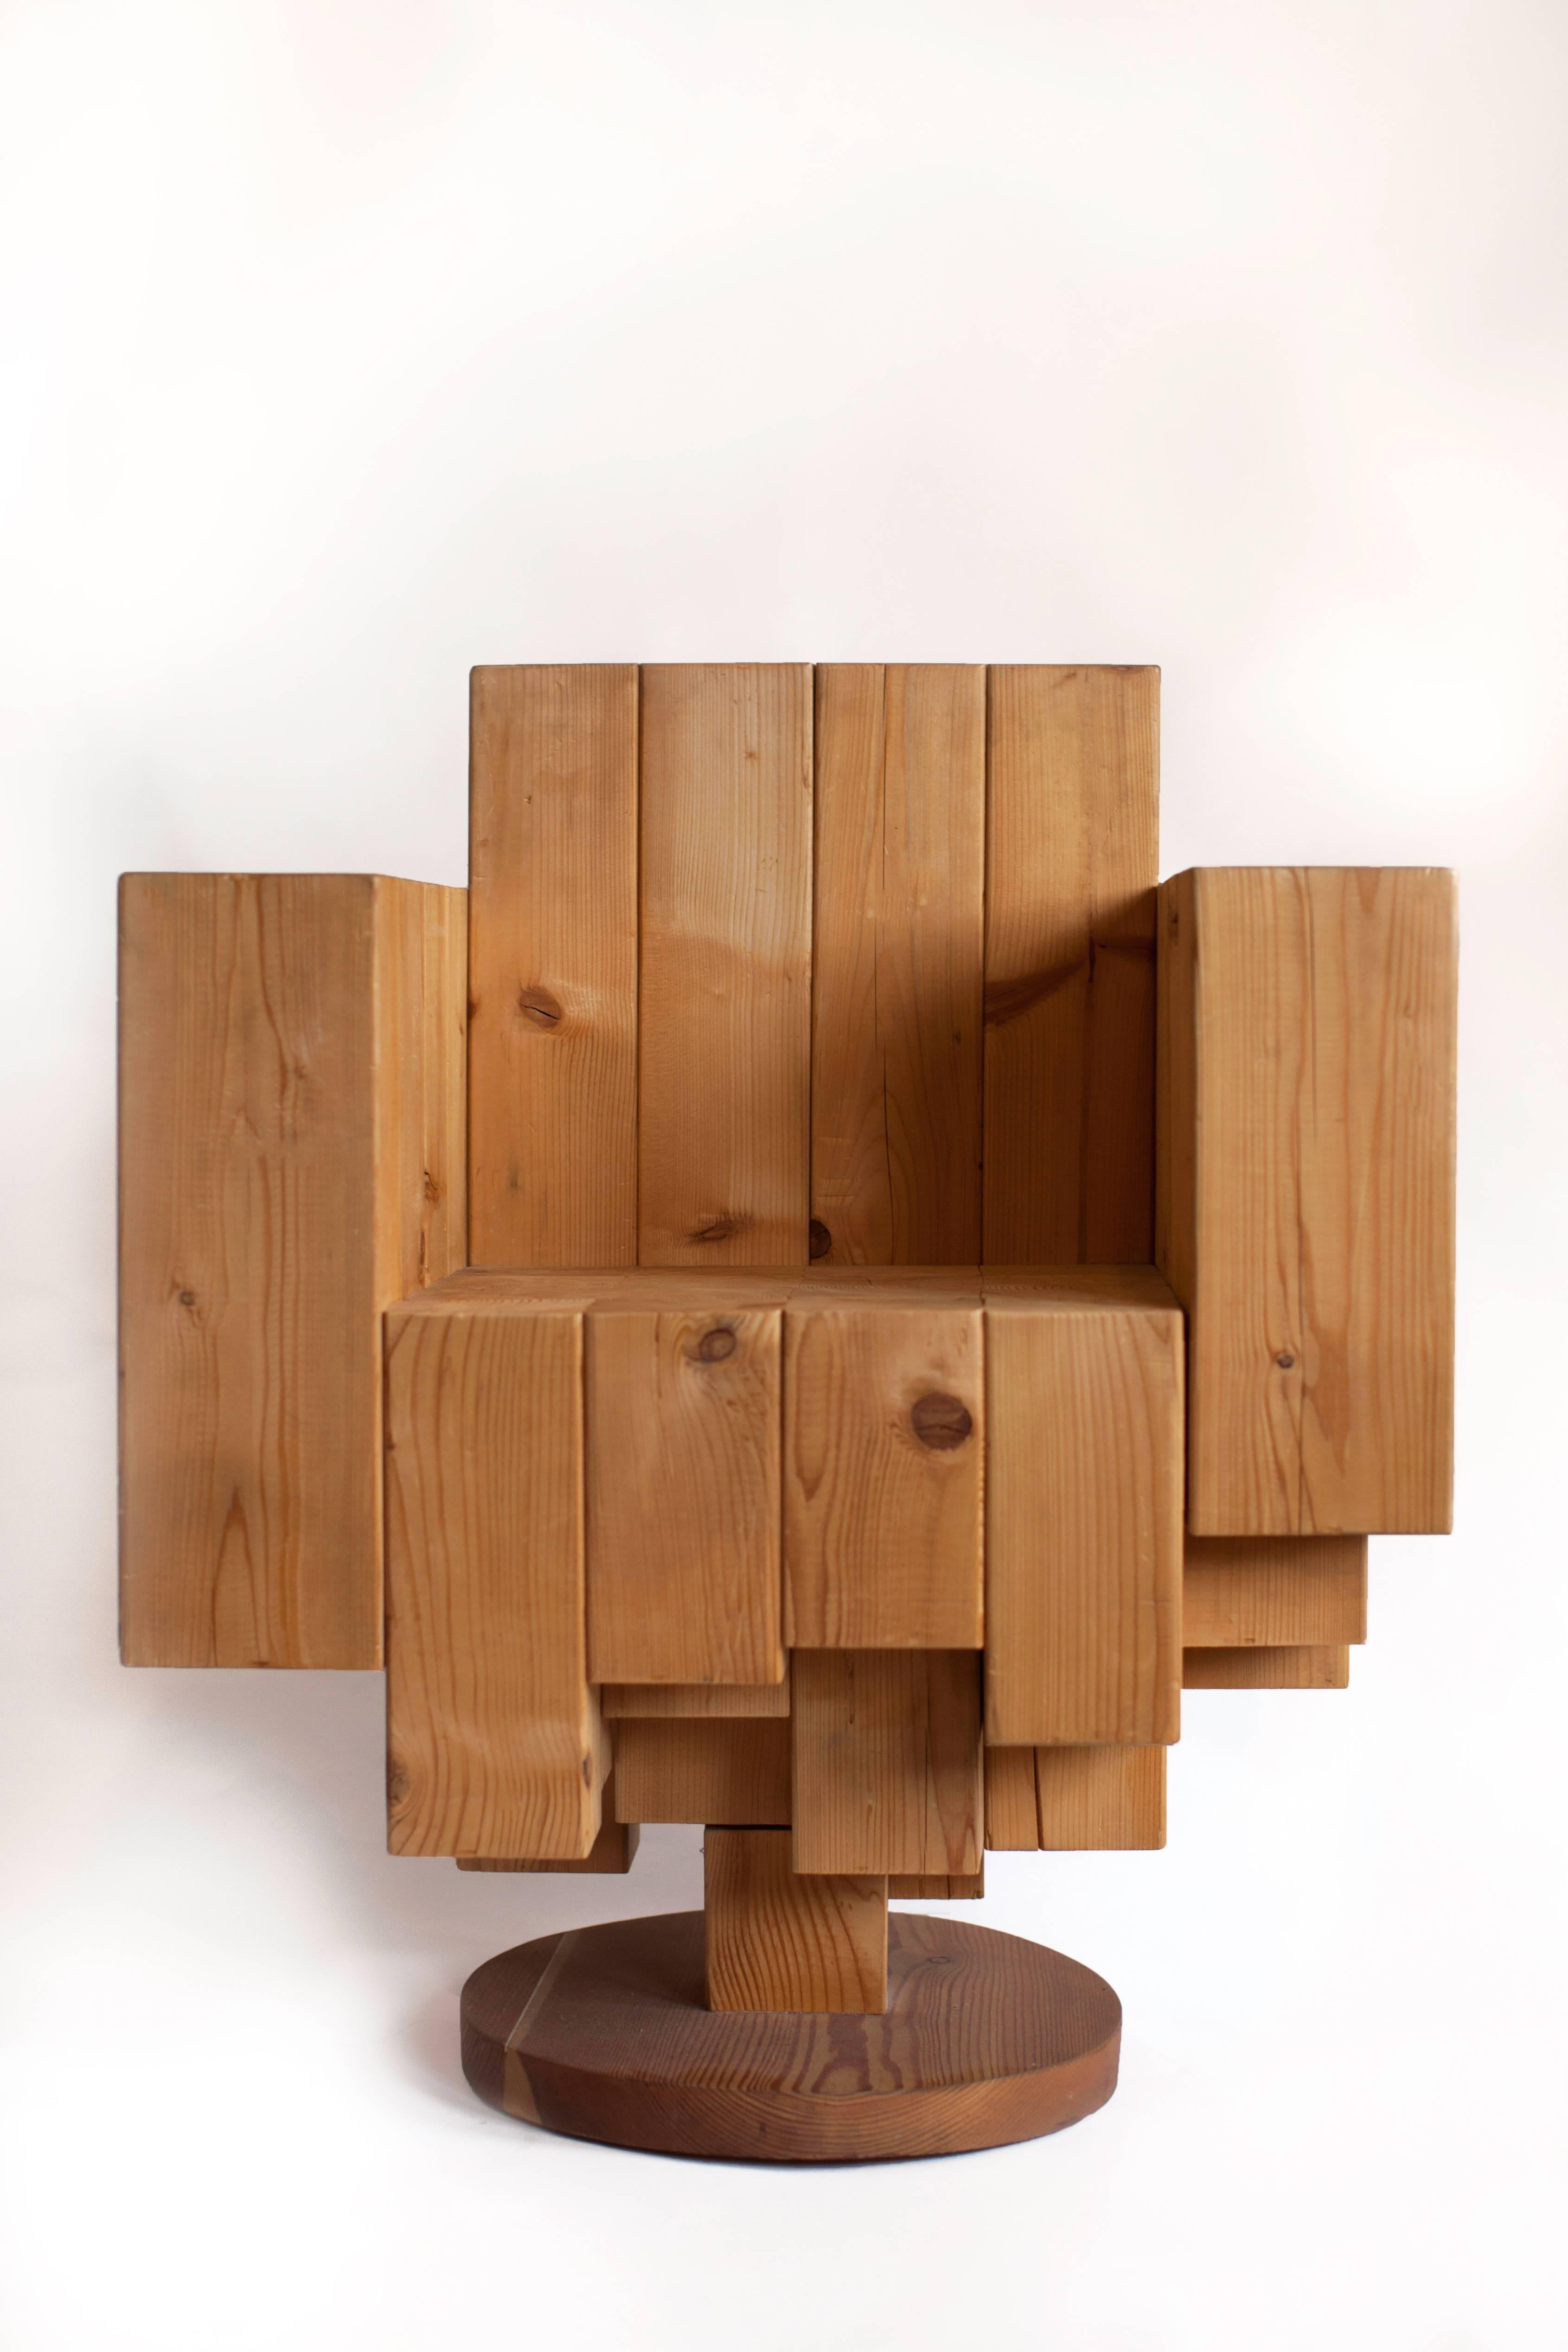 Giorgio Mariani (geb. 1966)

Ein schöner, skulpturaler, kubistischer Sessel aus massiven, asymmetrischen Kiefernblöcken mit kontrastierenden, kreisförmigen Holzmaserungen auf der Sitzfläche. Dieses atemberaubende und einzigartige Stück des